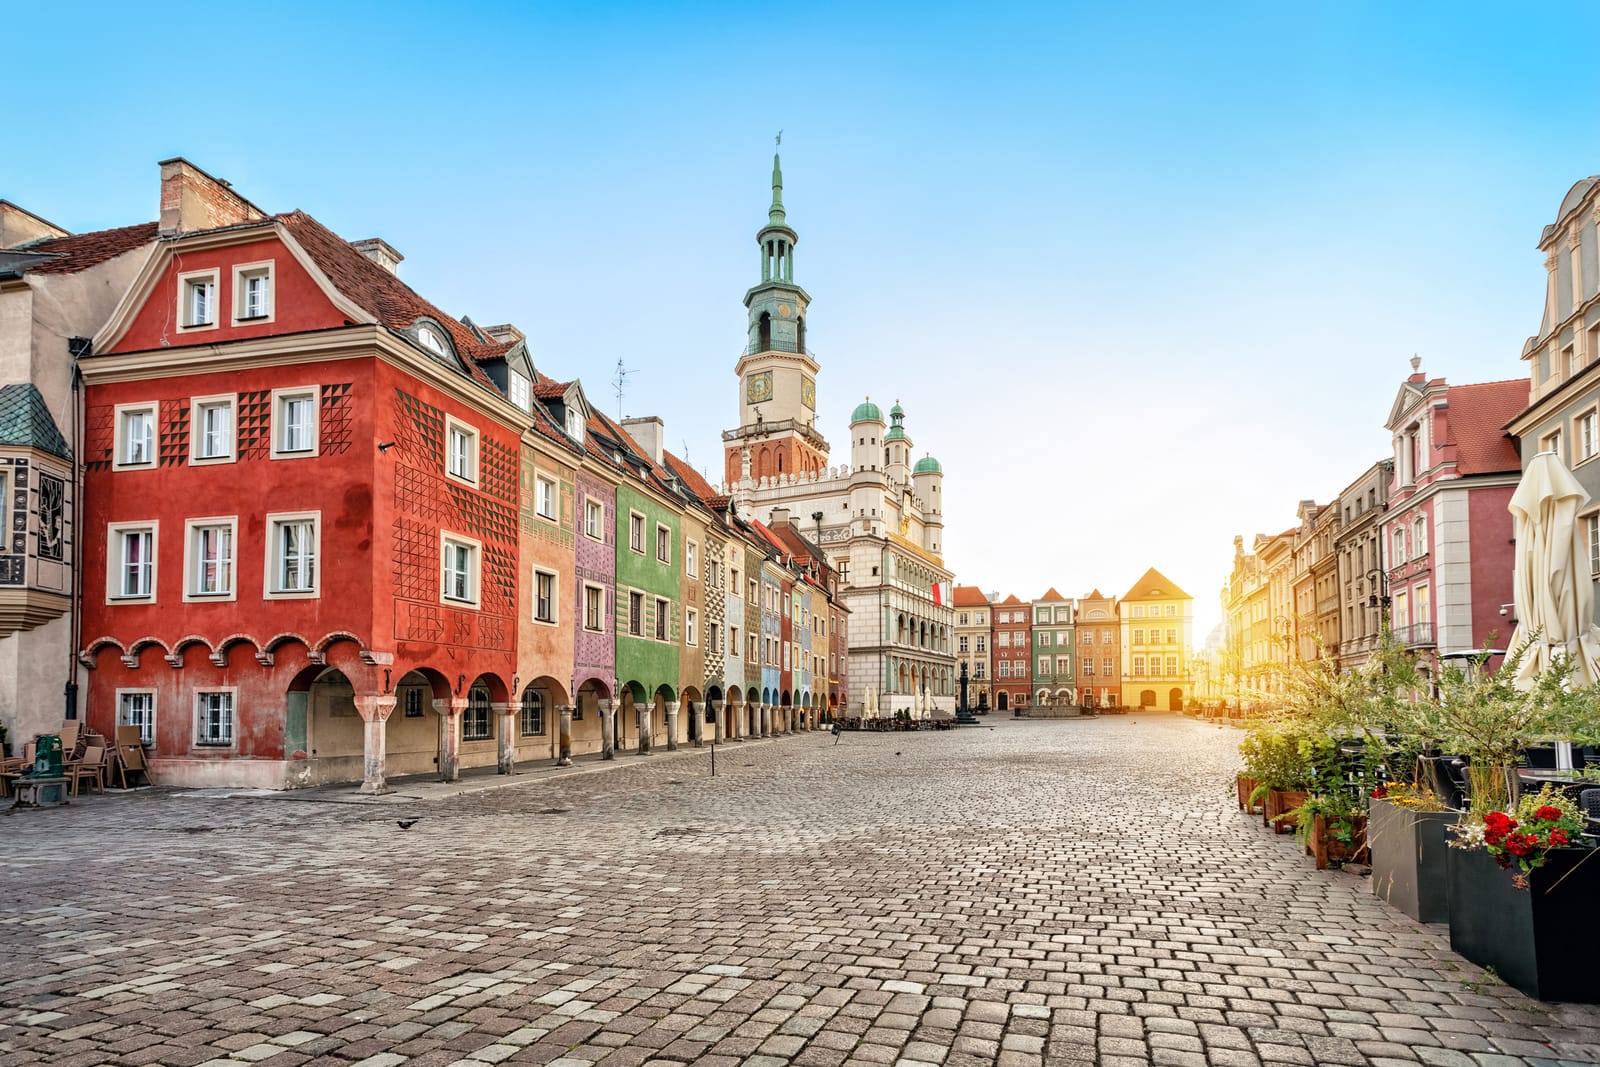 9 Obiective turistice în Poznan ce nu trebuie ratate!